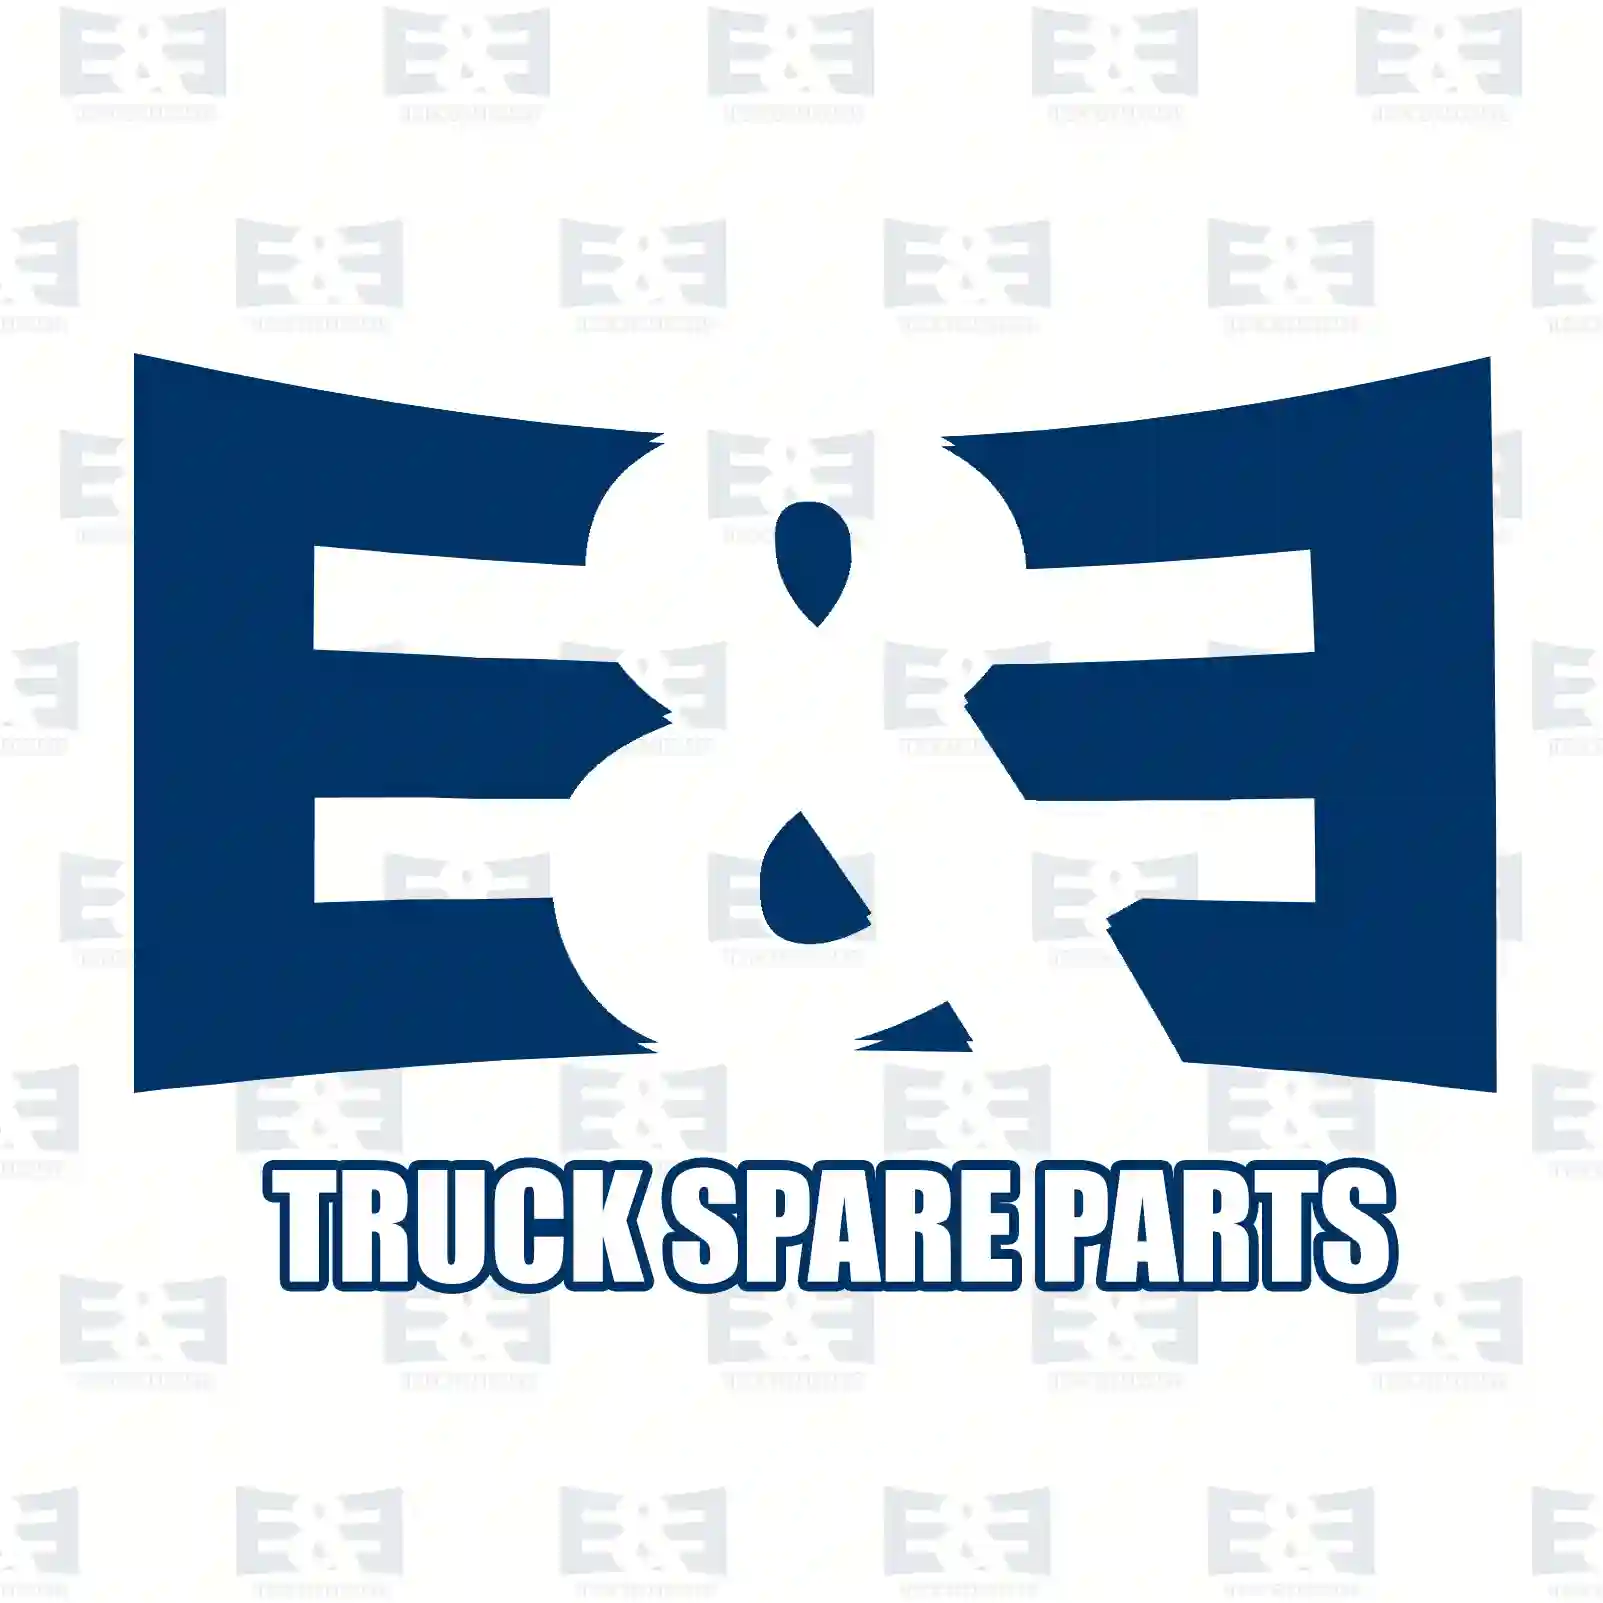 Unit injector, 2E2286999, 20929906 ||  2E2286999 E&E Truck Spare Parts | Truck Spare Parts, Auotomotive Spare Parts Unit injector, 2E2286999, 20929906 ||  2E2286999 E&E Truck Spare Parts | Truck Spare Parts, Auotomotive Spare Parts